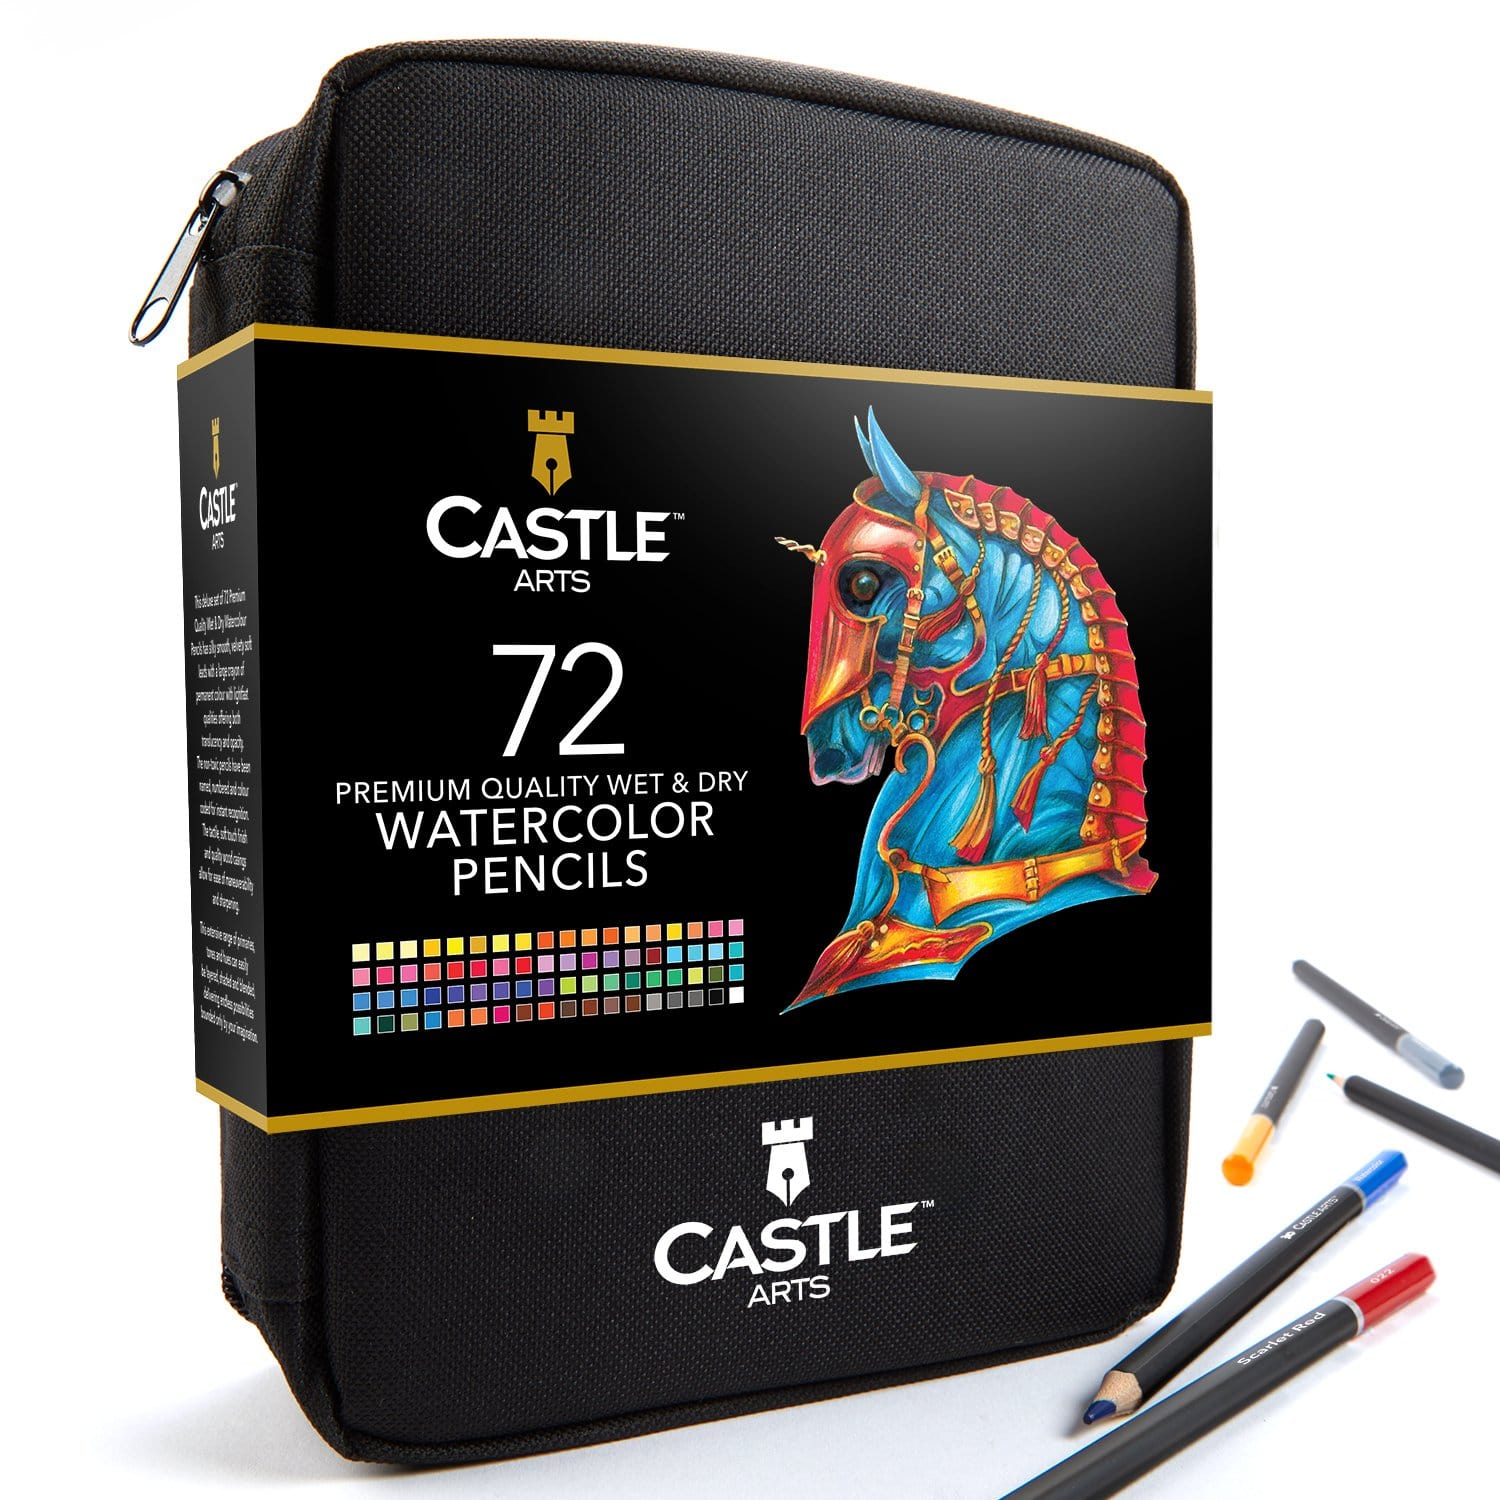 http://castlearts.com/cdn/shop/products/Watercolored-Pencils-x-72-Wallet_03a-new-US.jpg?v=1622214609